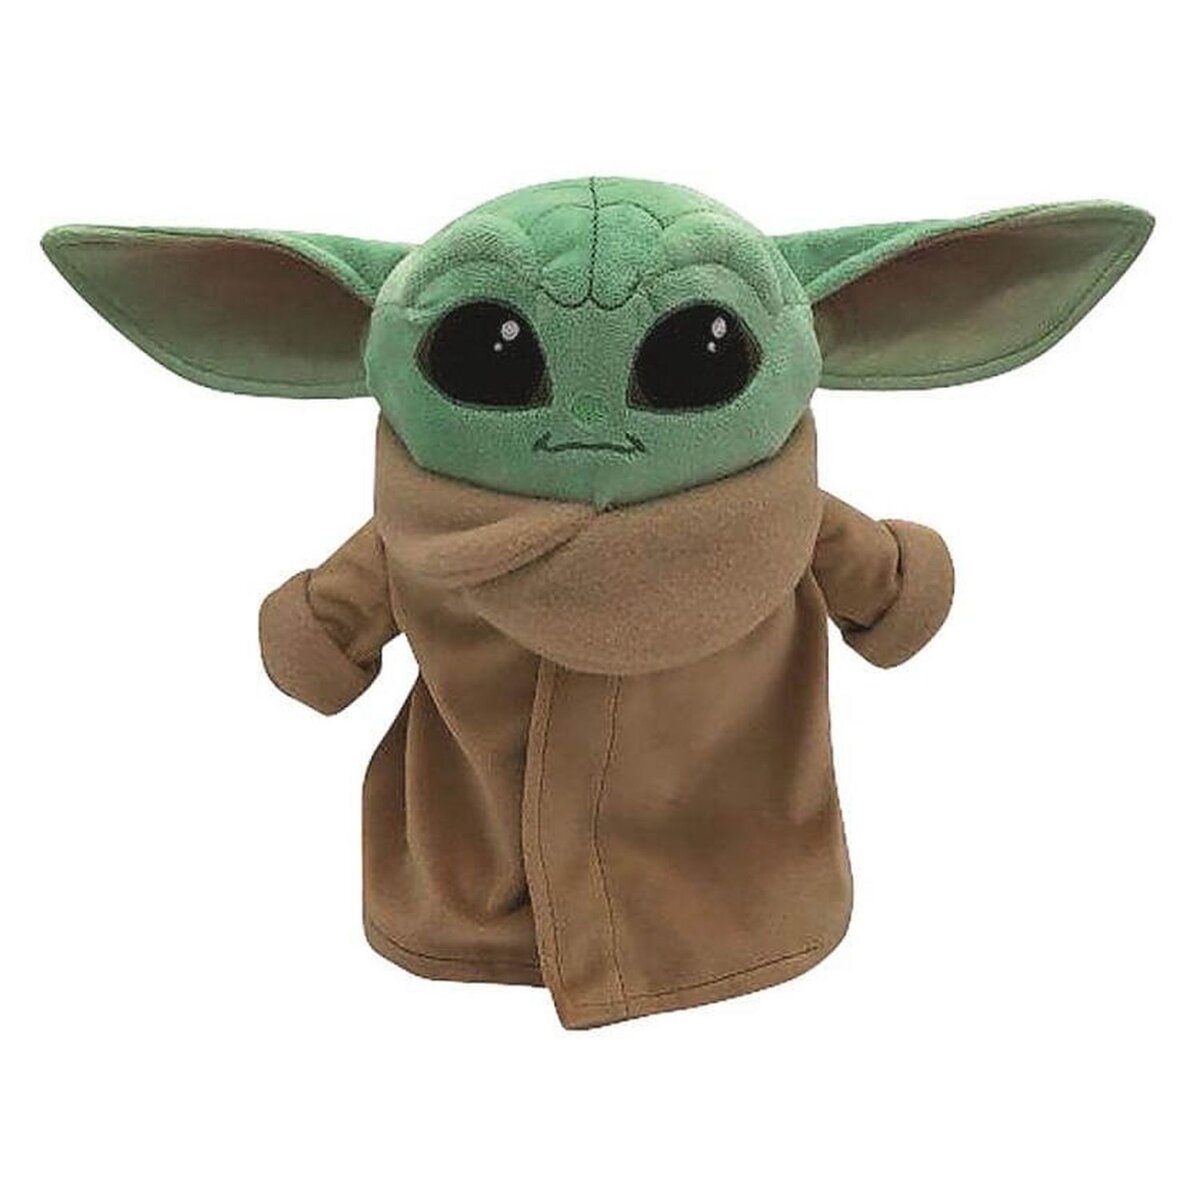 Star wars figurine peluche 28cm The Child alias Baby Yoda - Mattel - 3 ans